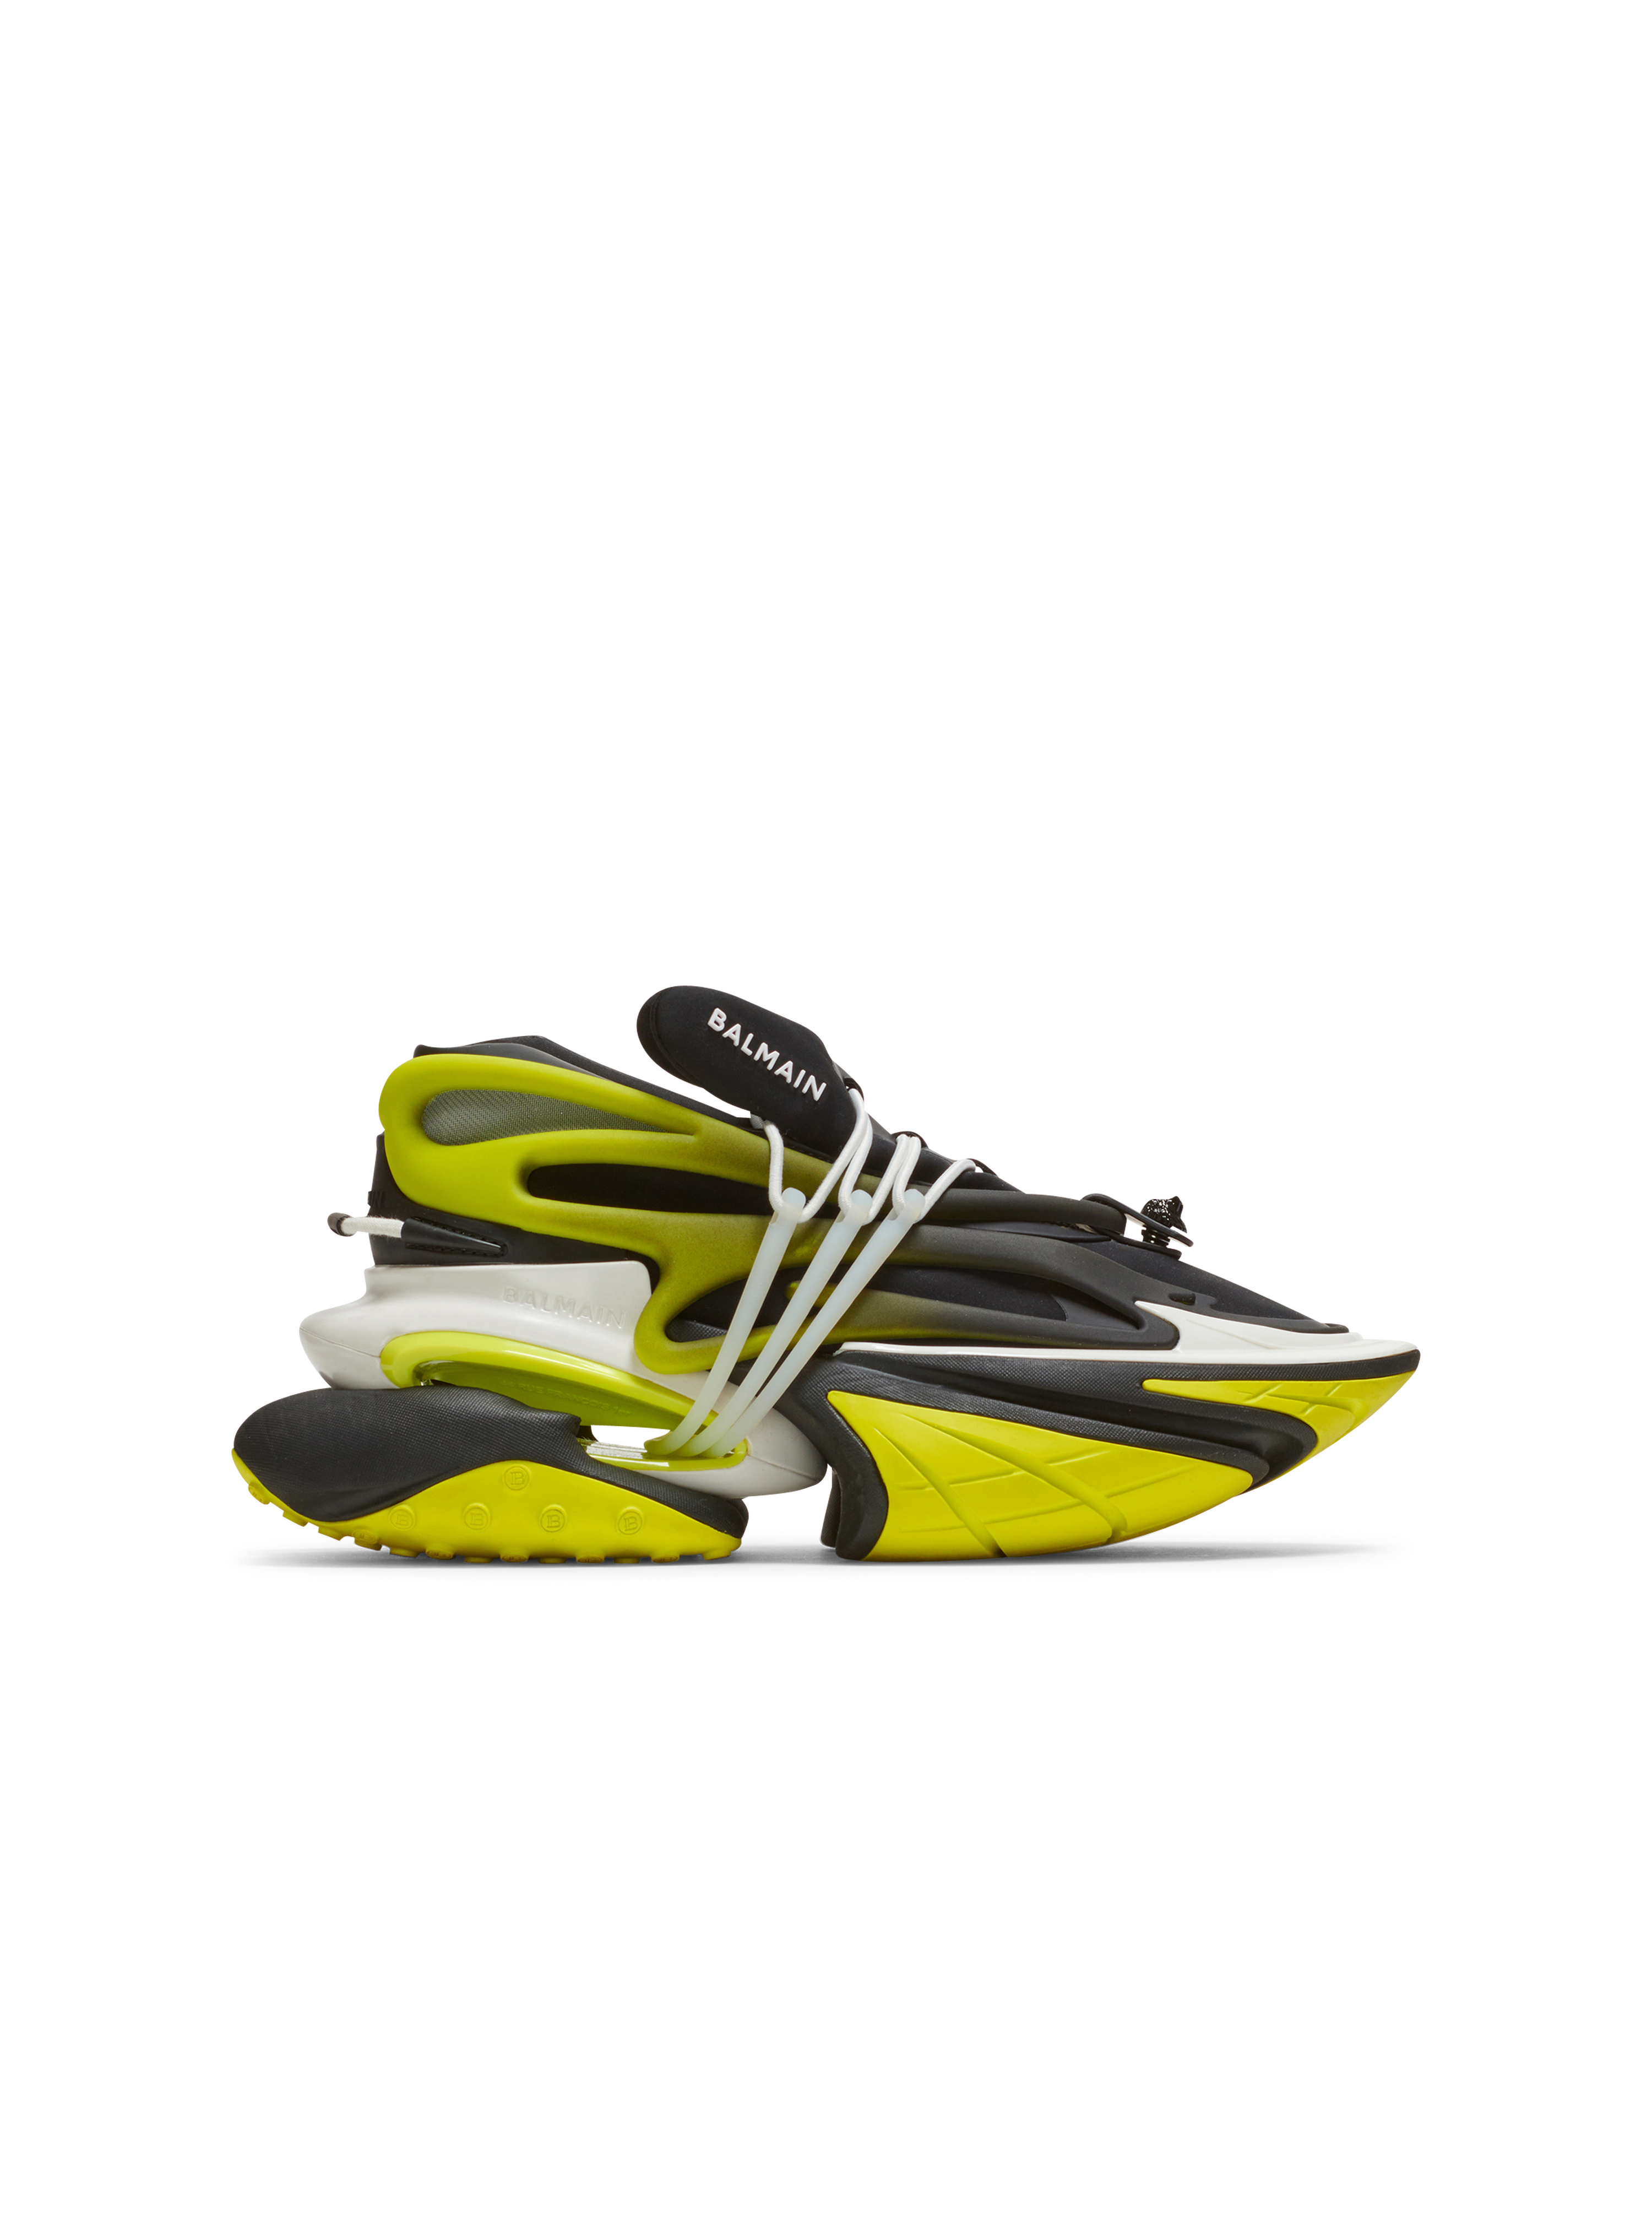 Unicorn氯丁橡胶和皮革低帮运动鞋, yellow